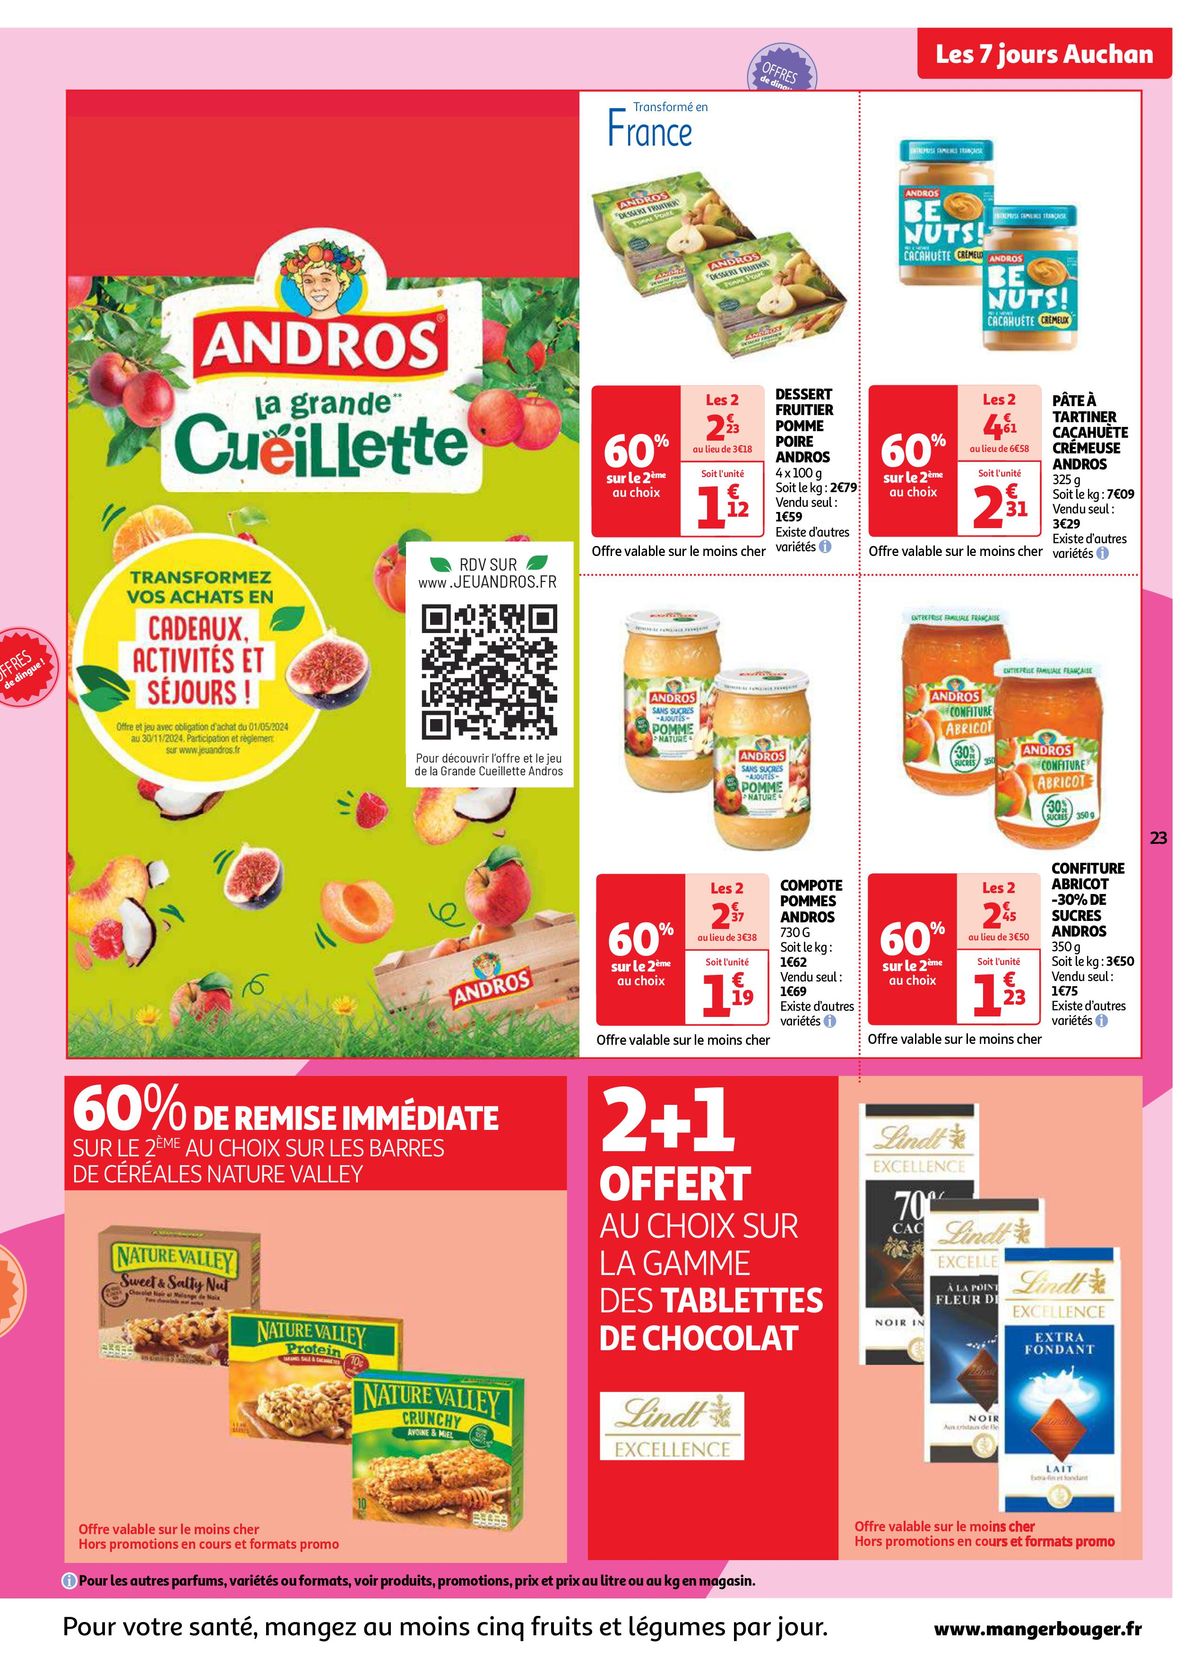 Catalogue Les 7 jours Auchan, c'est maintenant !, page 00023